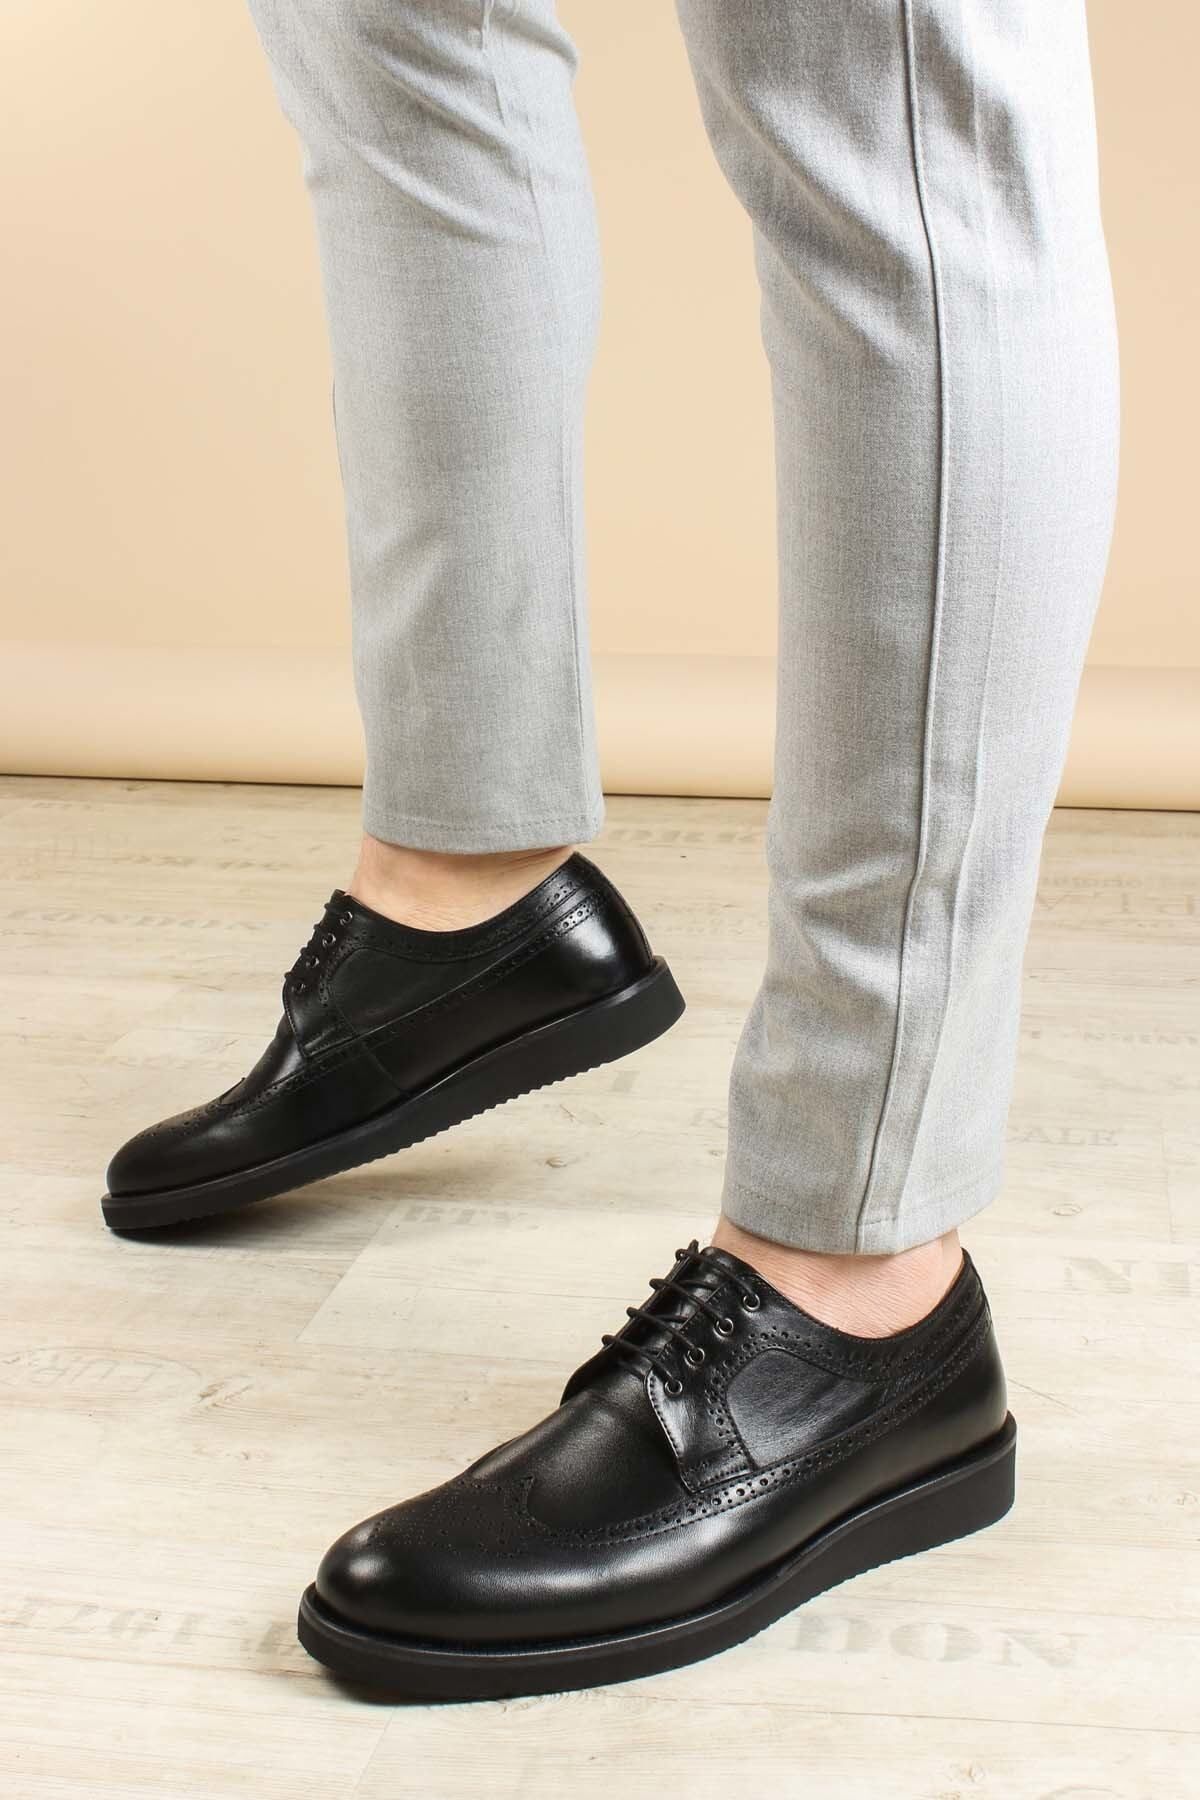 Fast Step Erkek Deri Casual Klasik Düz Taban Günlük Loafer Bağcıklı Ayakkabı Siyah 822ma051